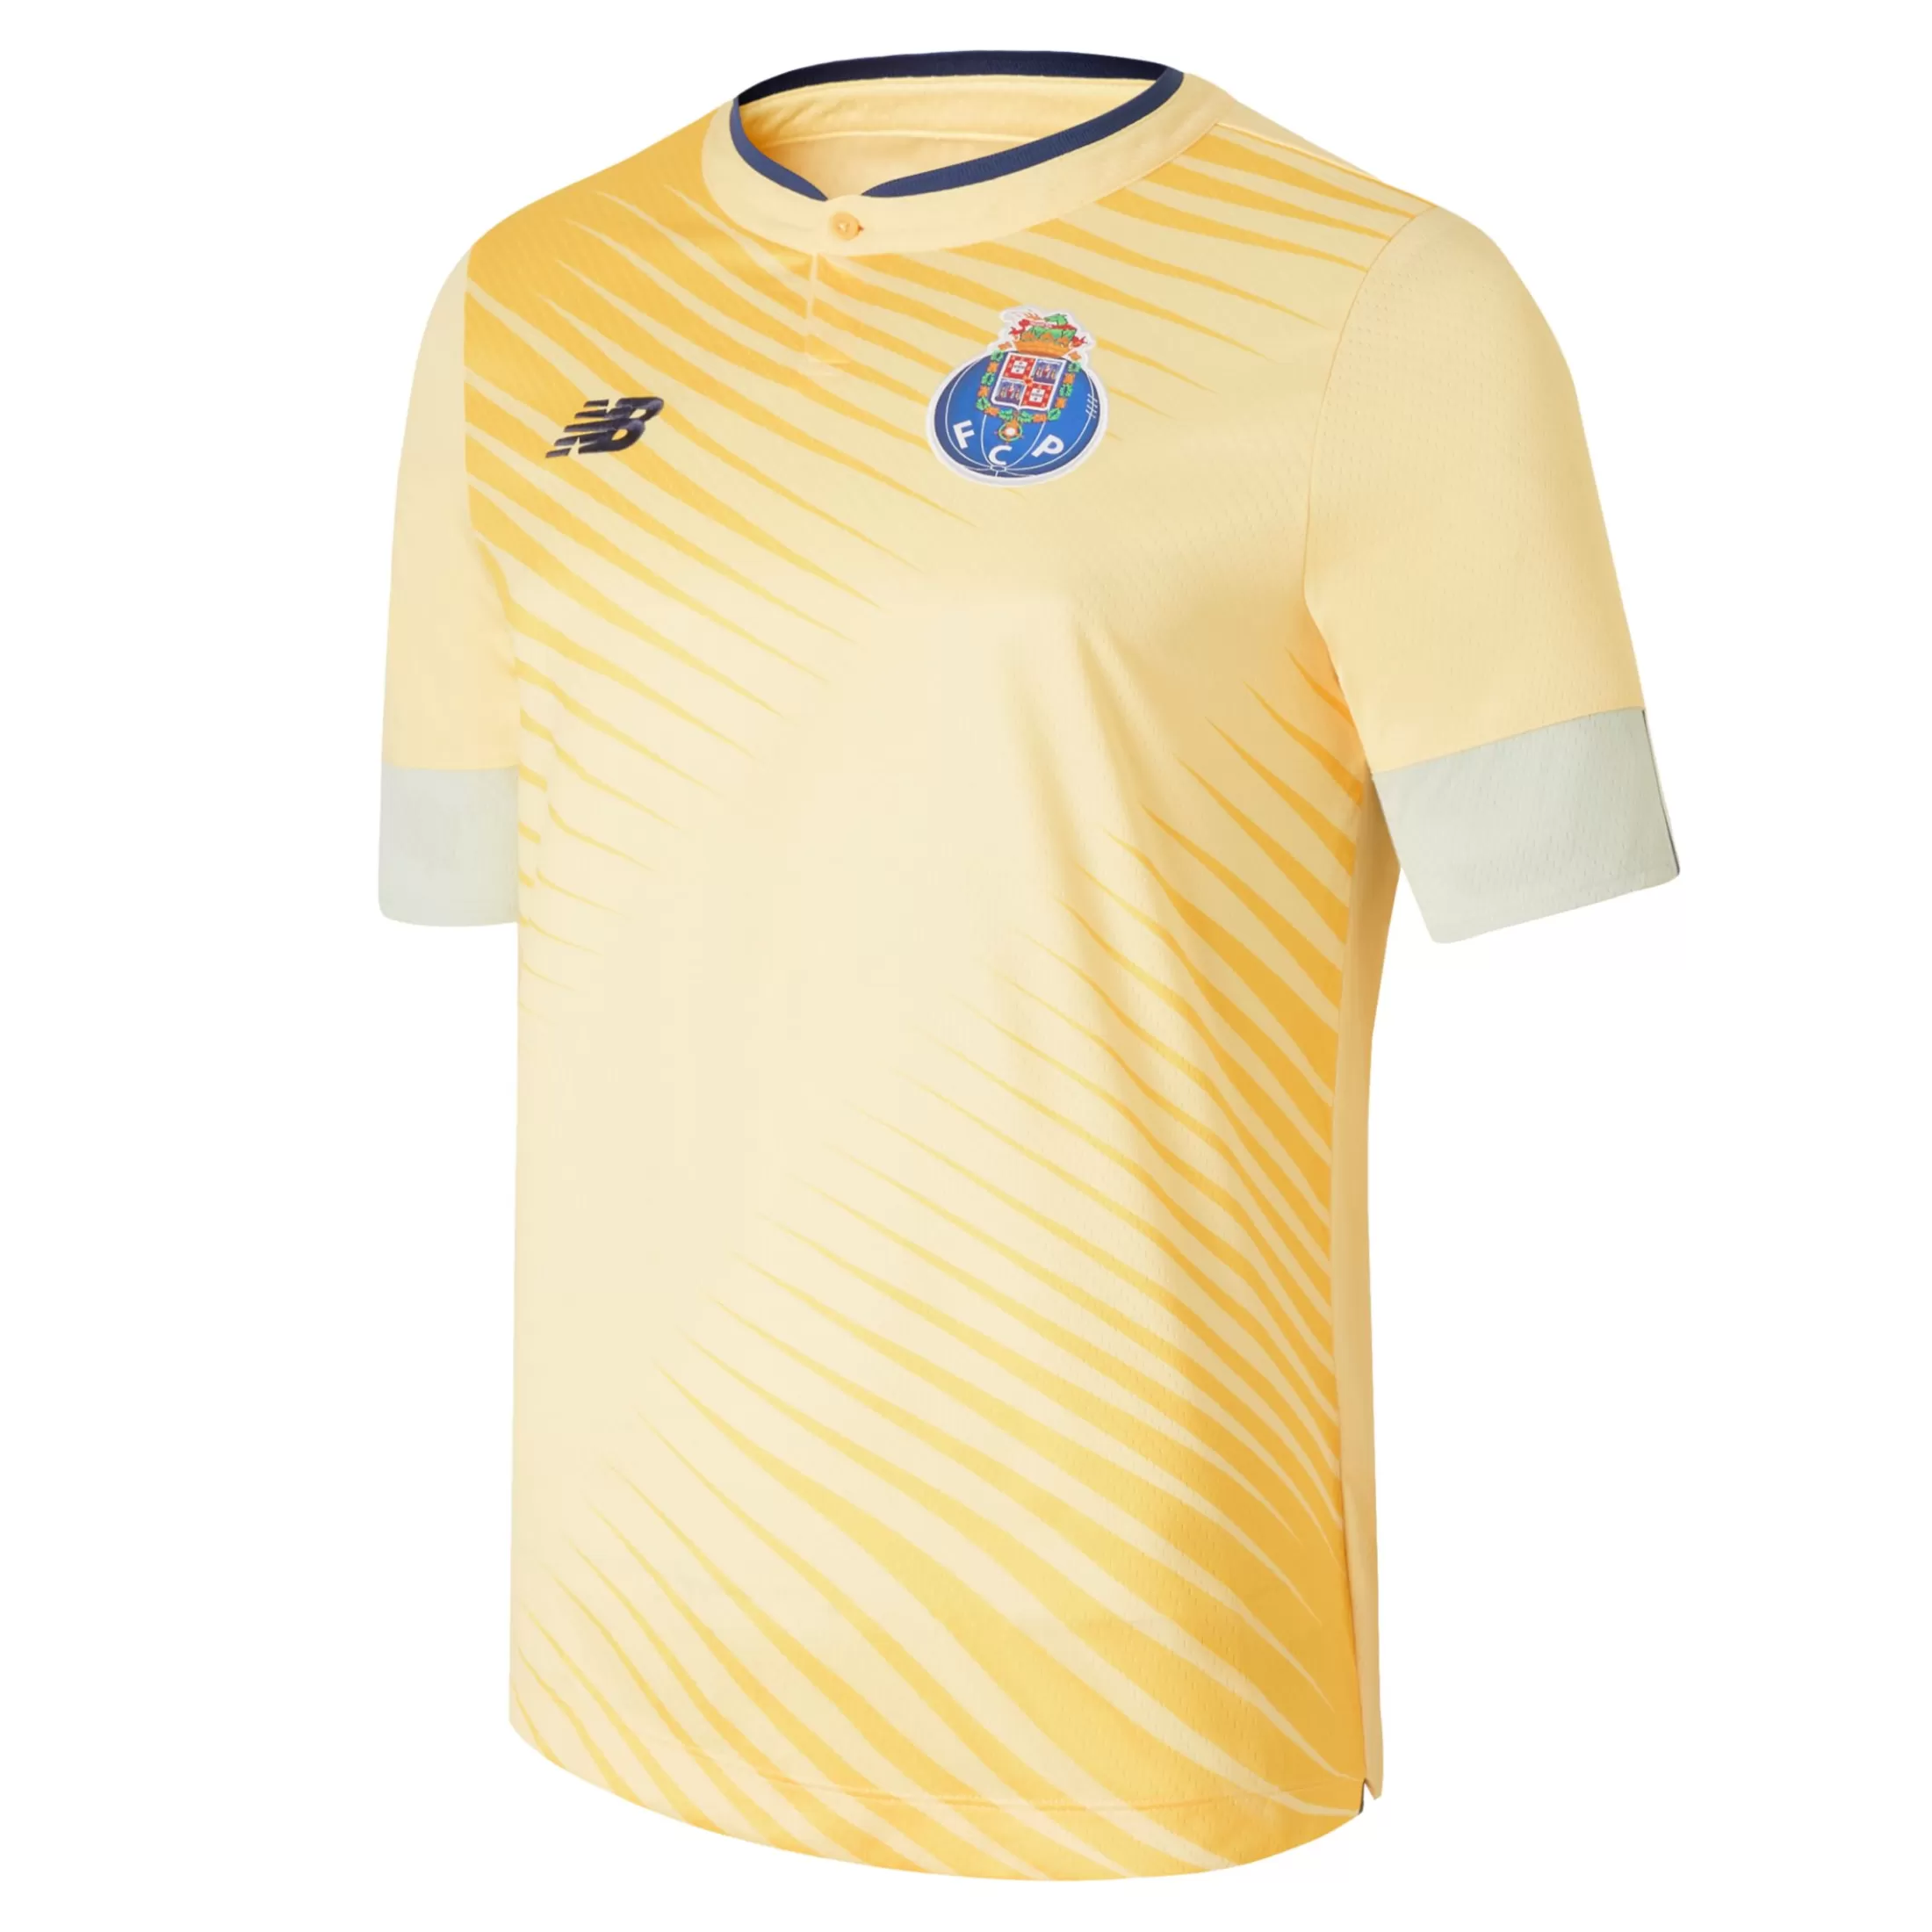 New Criança FC Porto Junior Short Sleeve Jersey Todo o vestuário